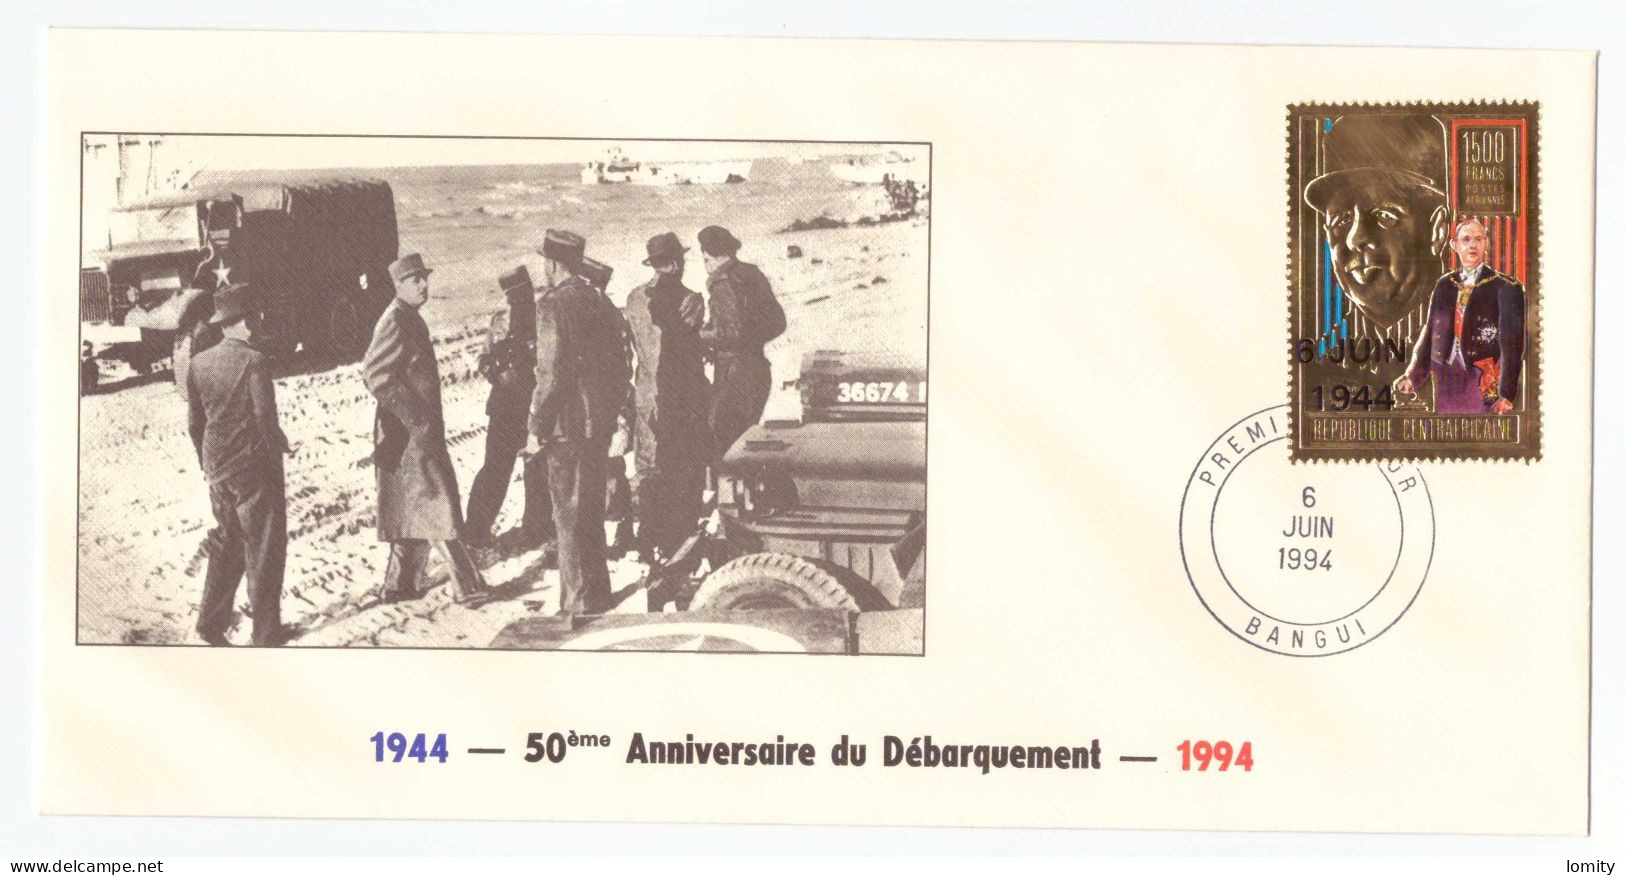 FDC Republique Centrafricaine Bangui 50e Anniversaire Débarquement 1944 Timbre OR Gold 6 Juin 1994 Charles De Gaulle - WW2